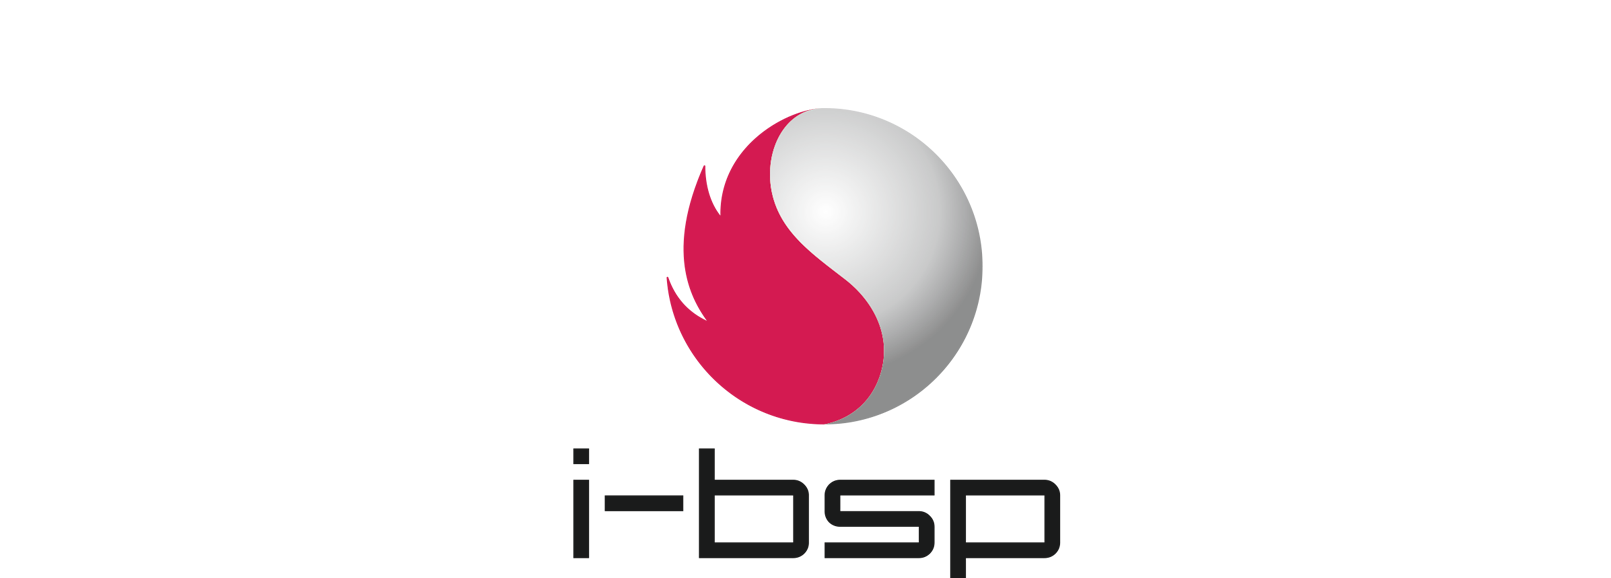 Sicherheit und Evakuierung, i-bsp GmbH